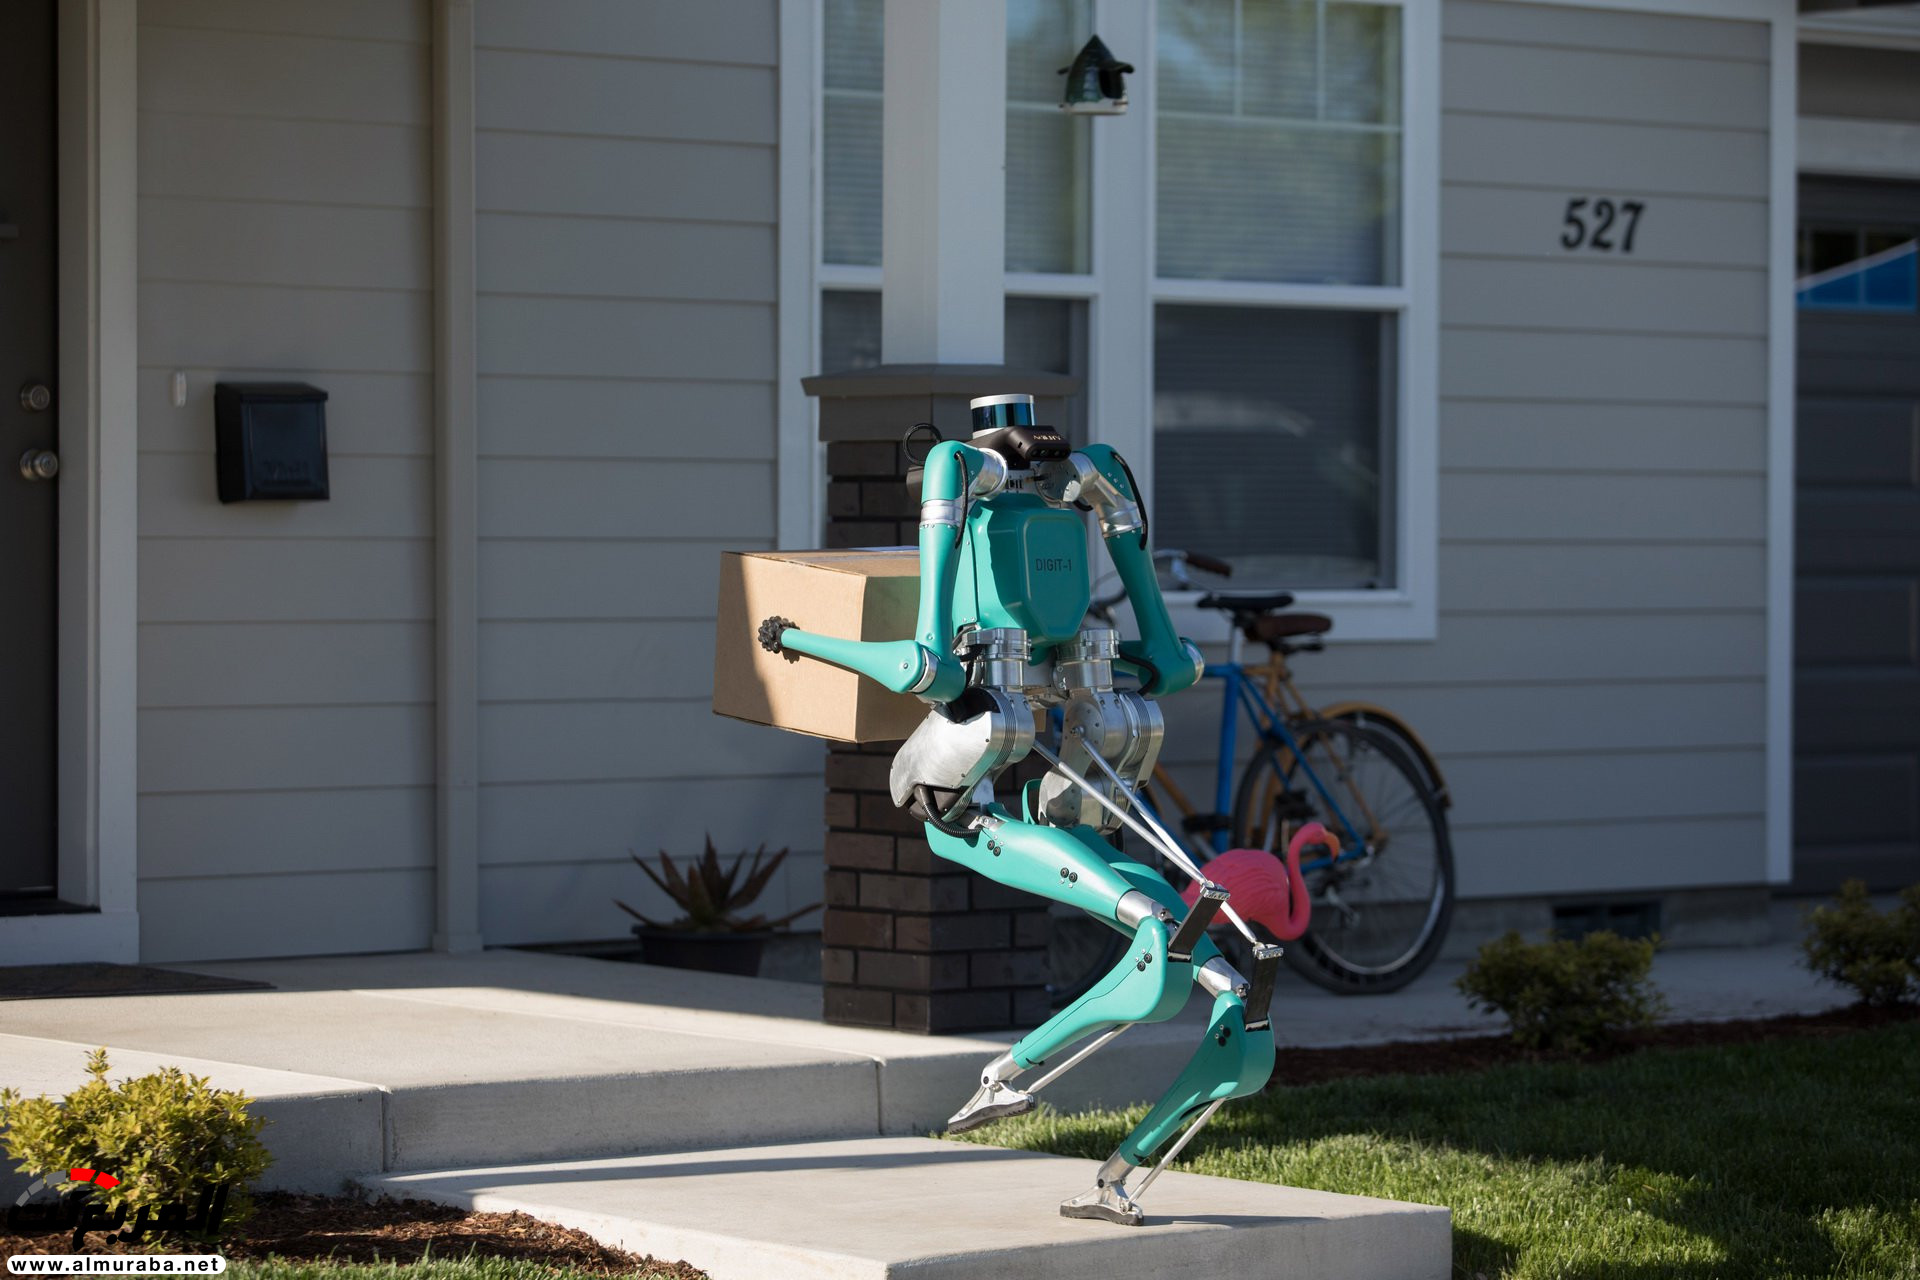 "بالفيديو والصور" فورد طورت روبوت يوصّل الطلبيات للمنازل 31